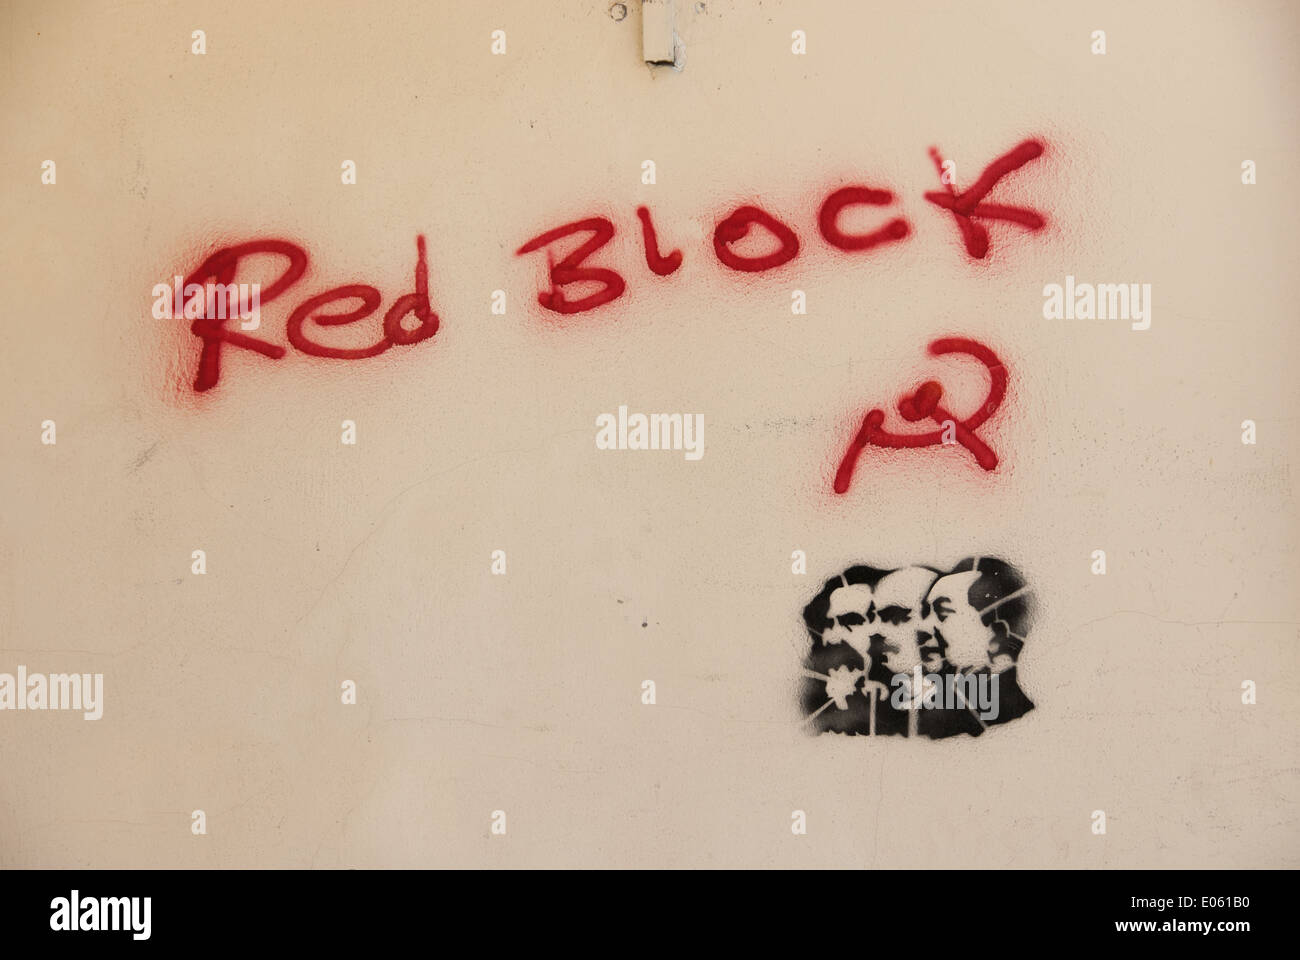 Politische Graffiti und Schablone in rot und schwarz auf braun Lichtwand Stockfoto